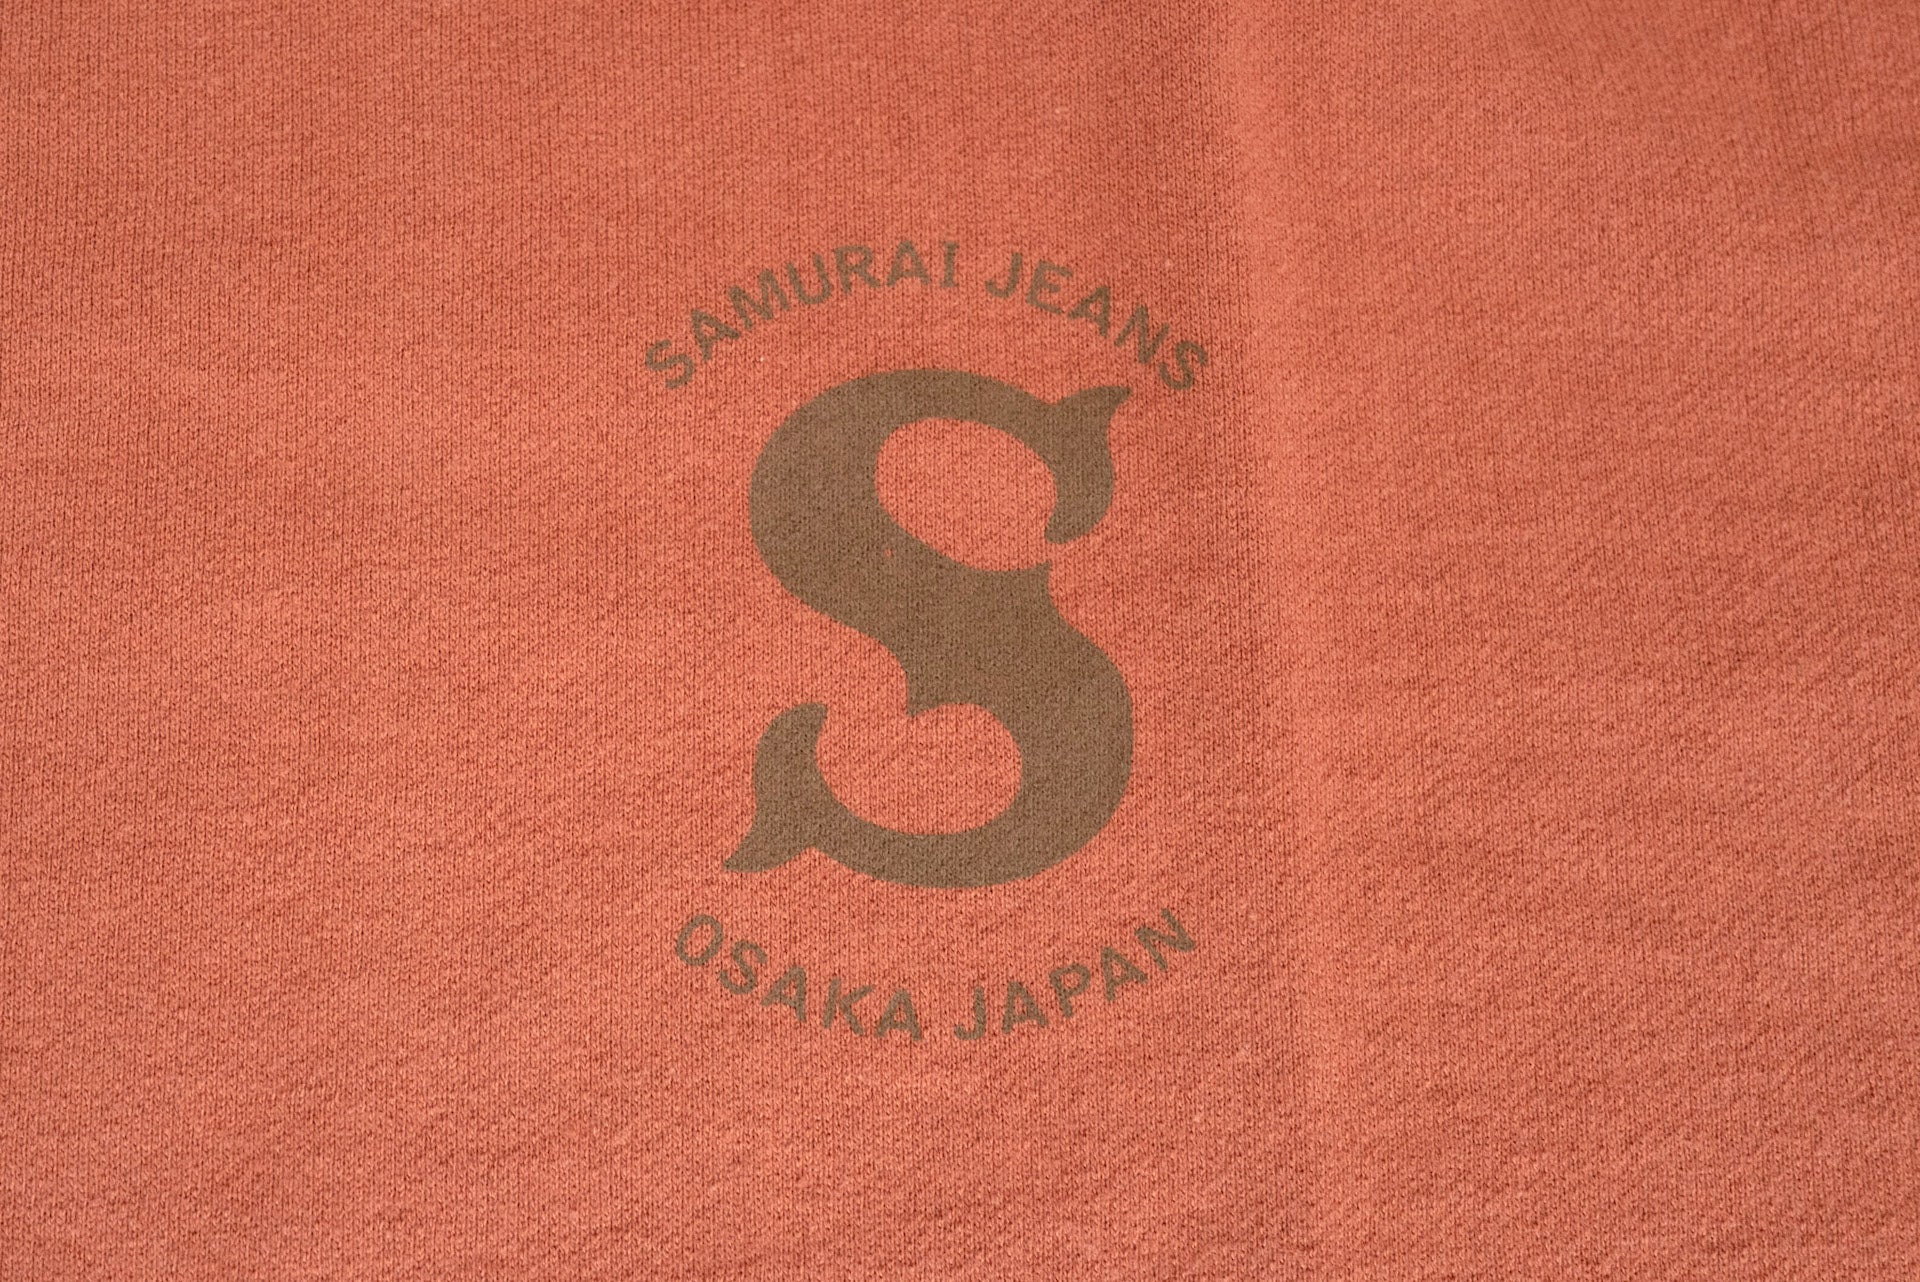 Samurai 7oz "Ranji" Loopwheeled Tee (Orange Red)